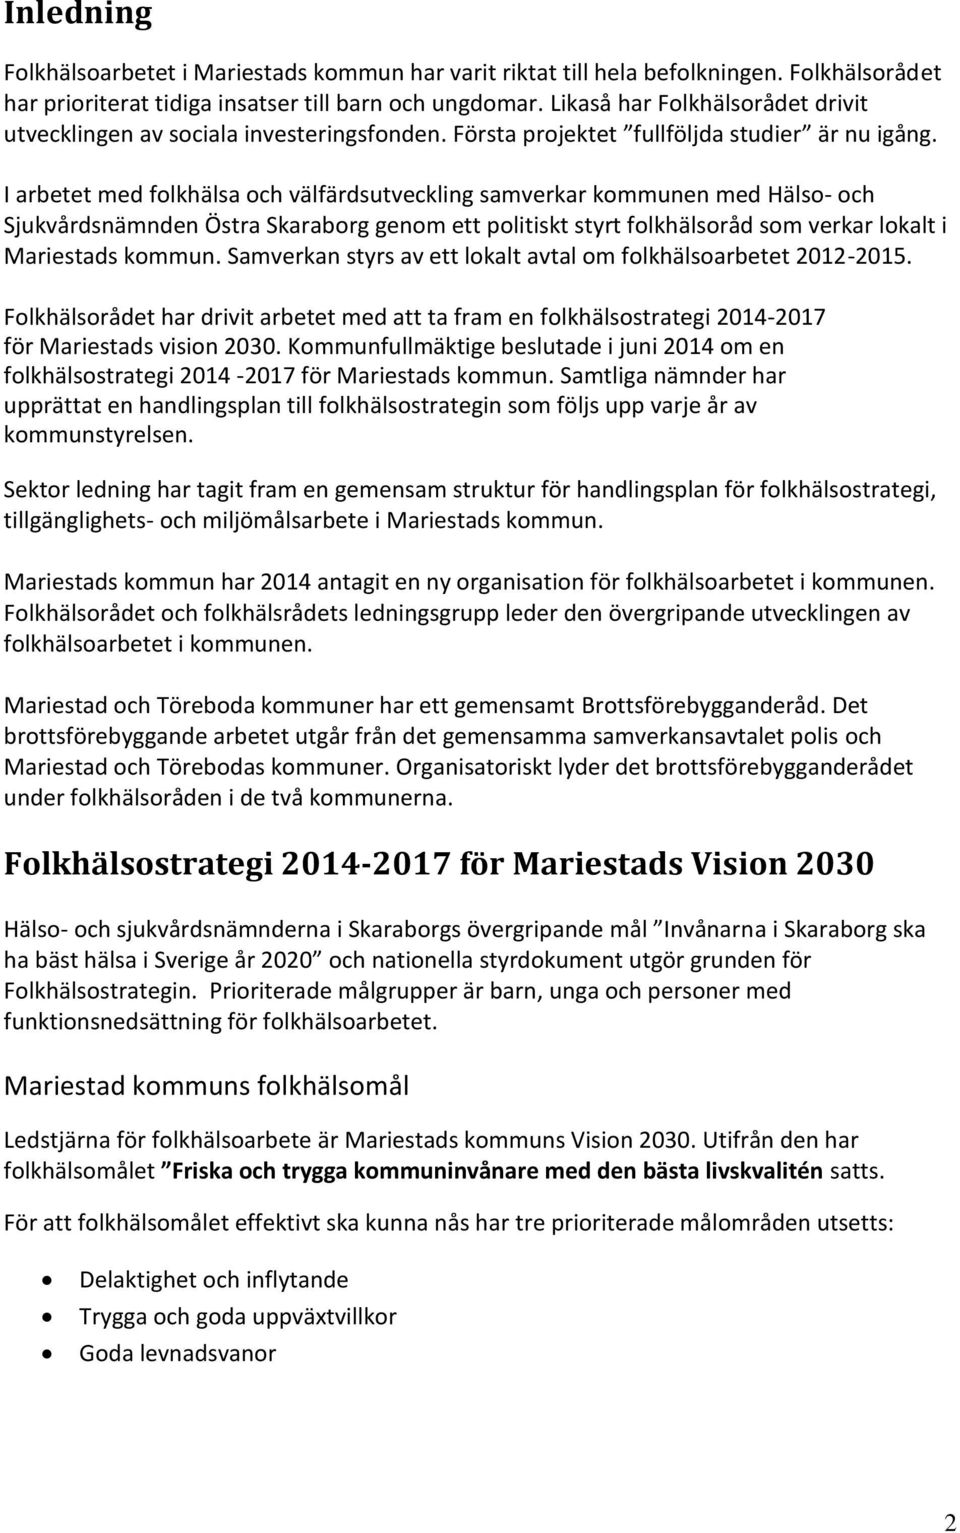 I arbetet med folkhälsa och välfärdsutveckling samverkar kommunen med Hälso- och Sjukvårdsnämnden Östra Skaraborg genom ett politiskt styrt folkhälsoråd som verkar lokalt i Mariestads kommun.